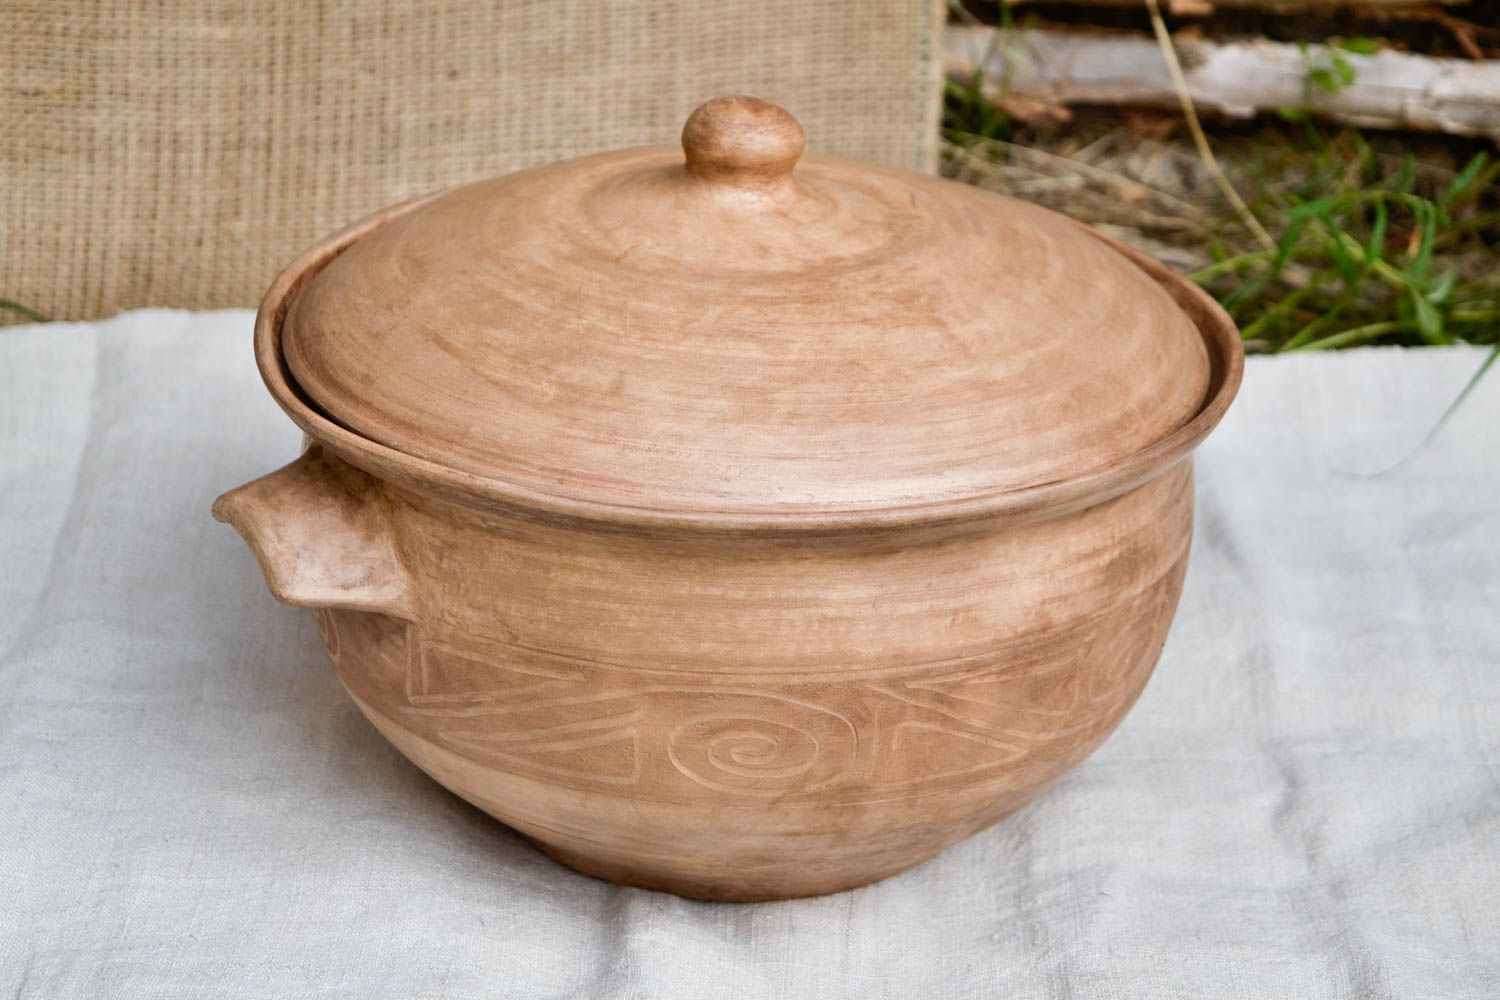 Topf aus Ton handgefertigt Deko für Küche Keramik Geschirr 3 L hellbraun 3 L foto 1